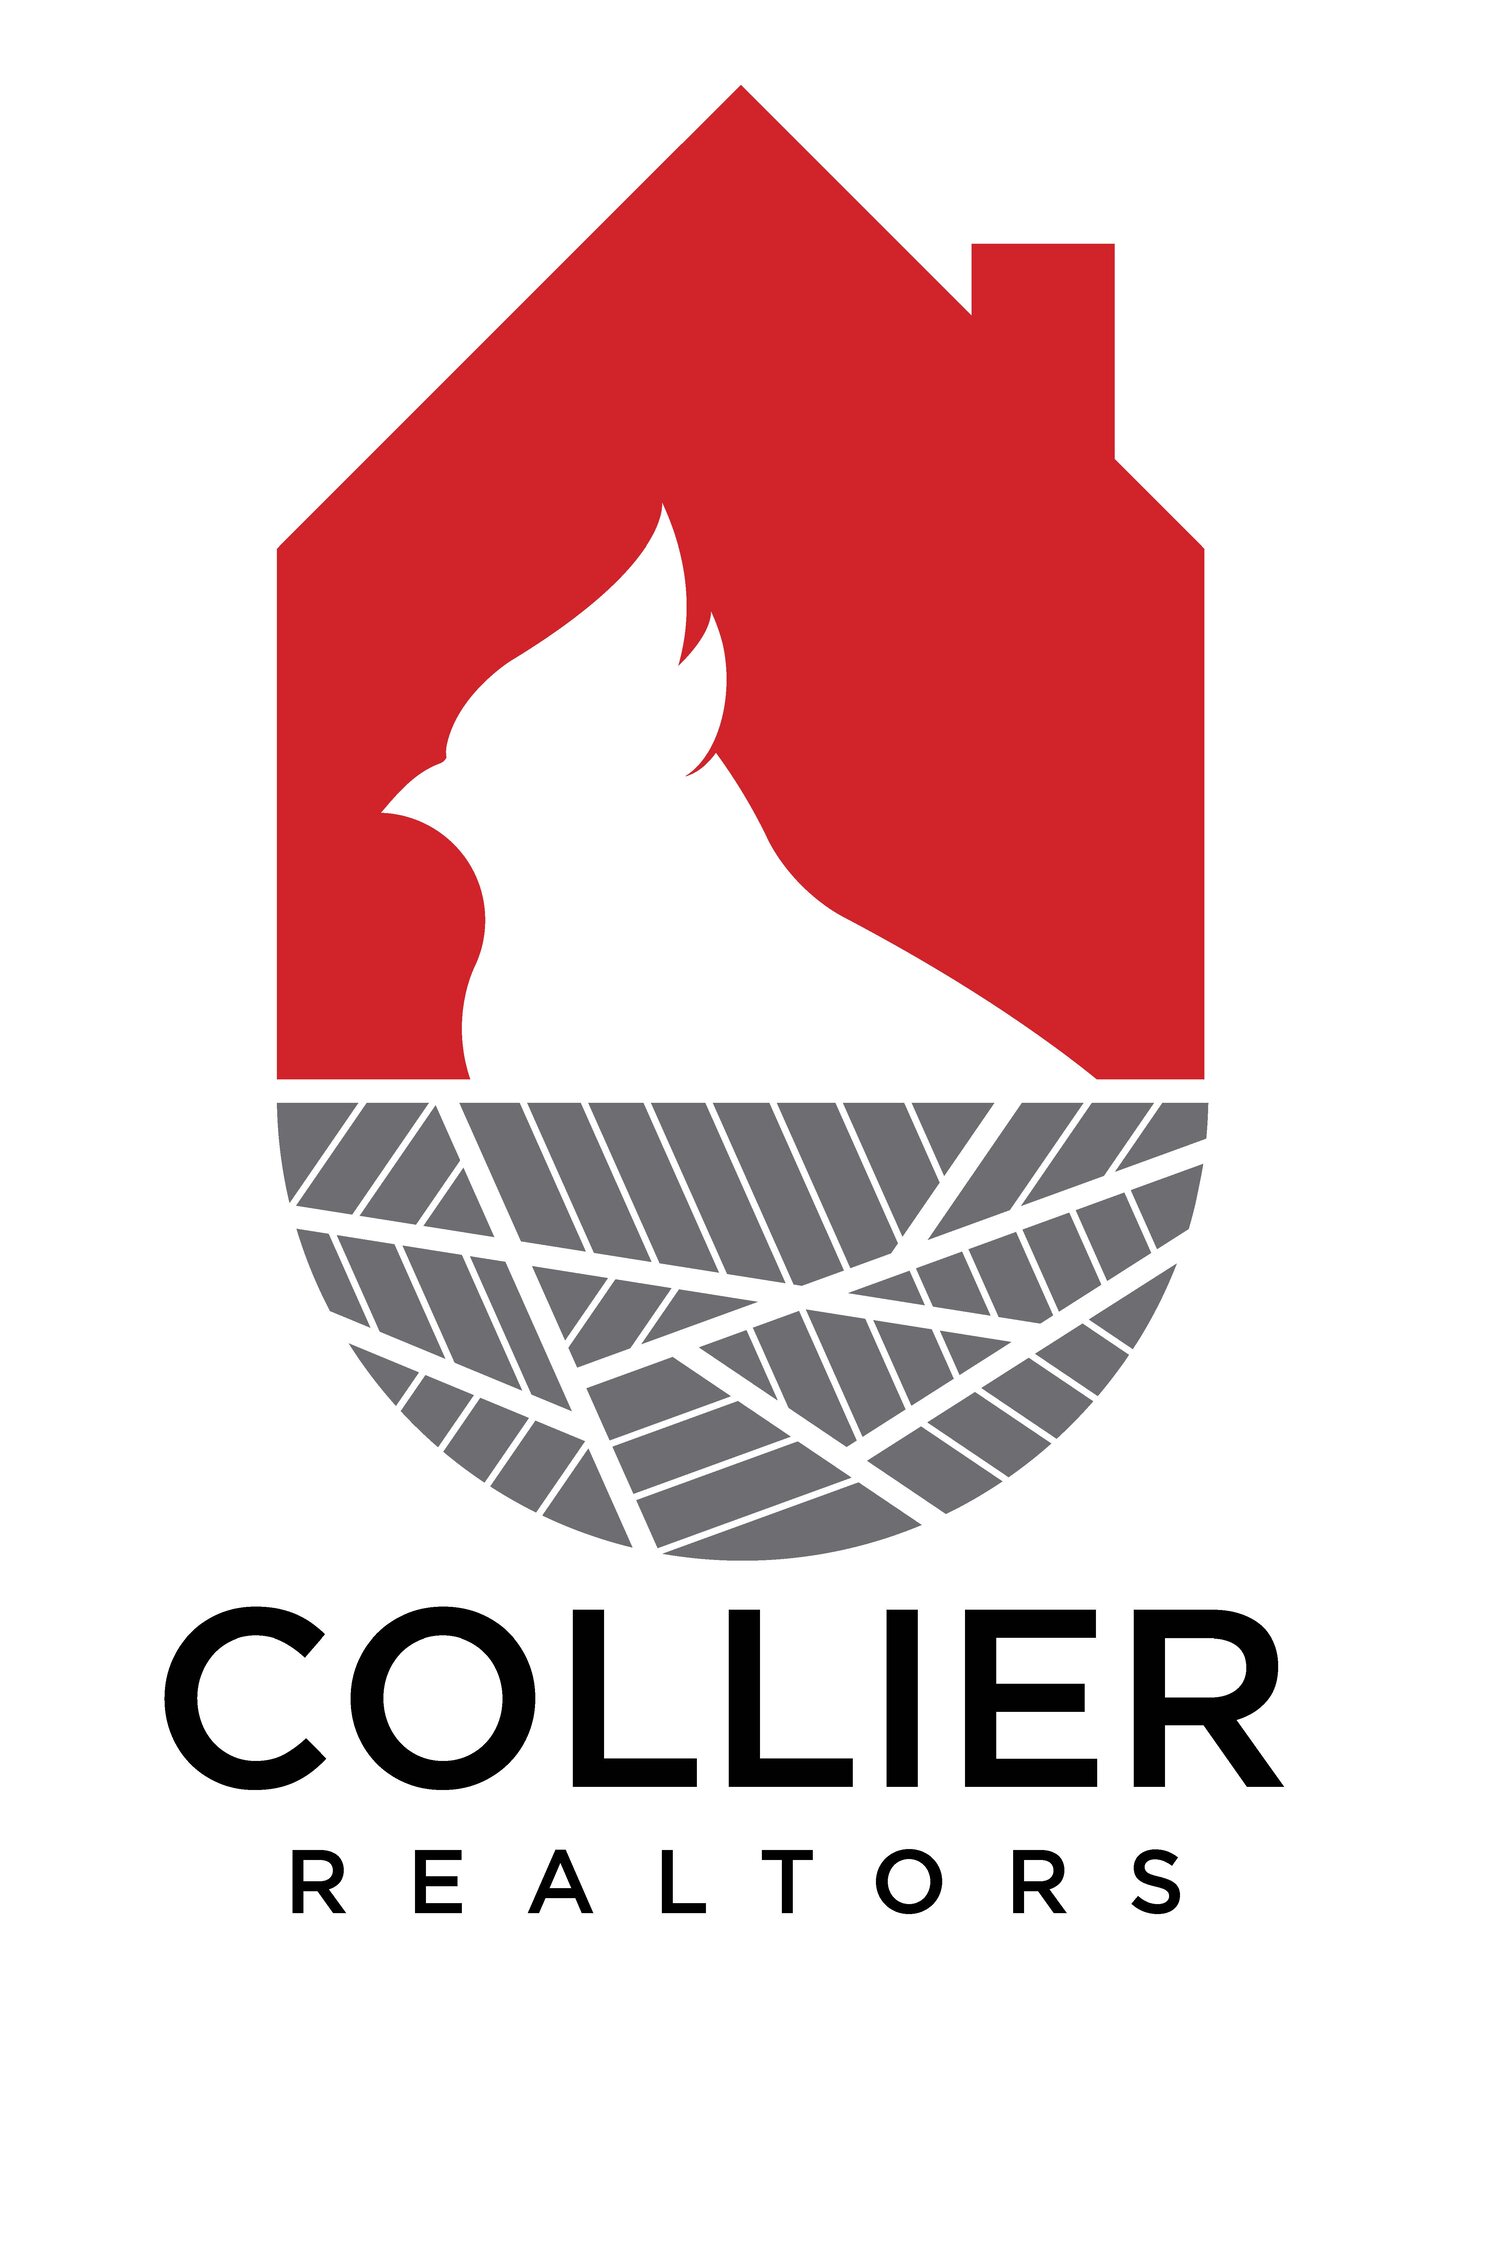 Collier Realtors